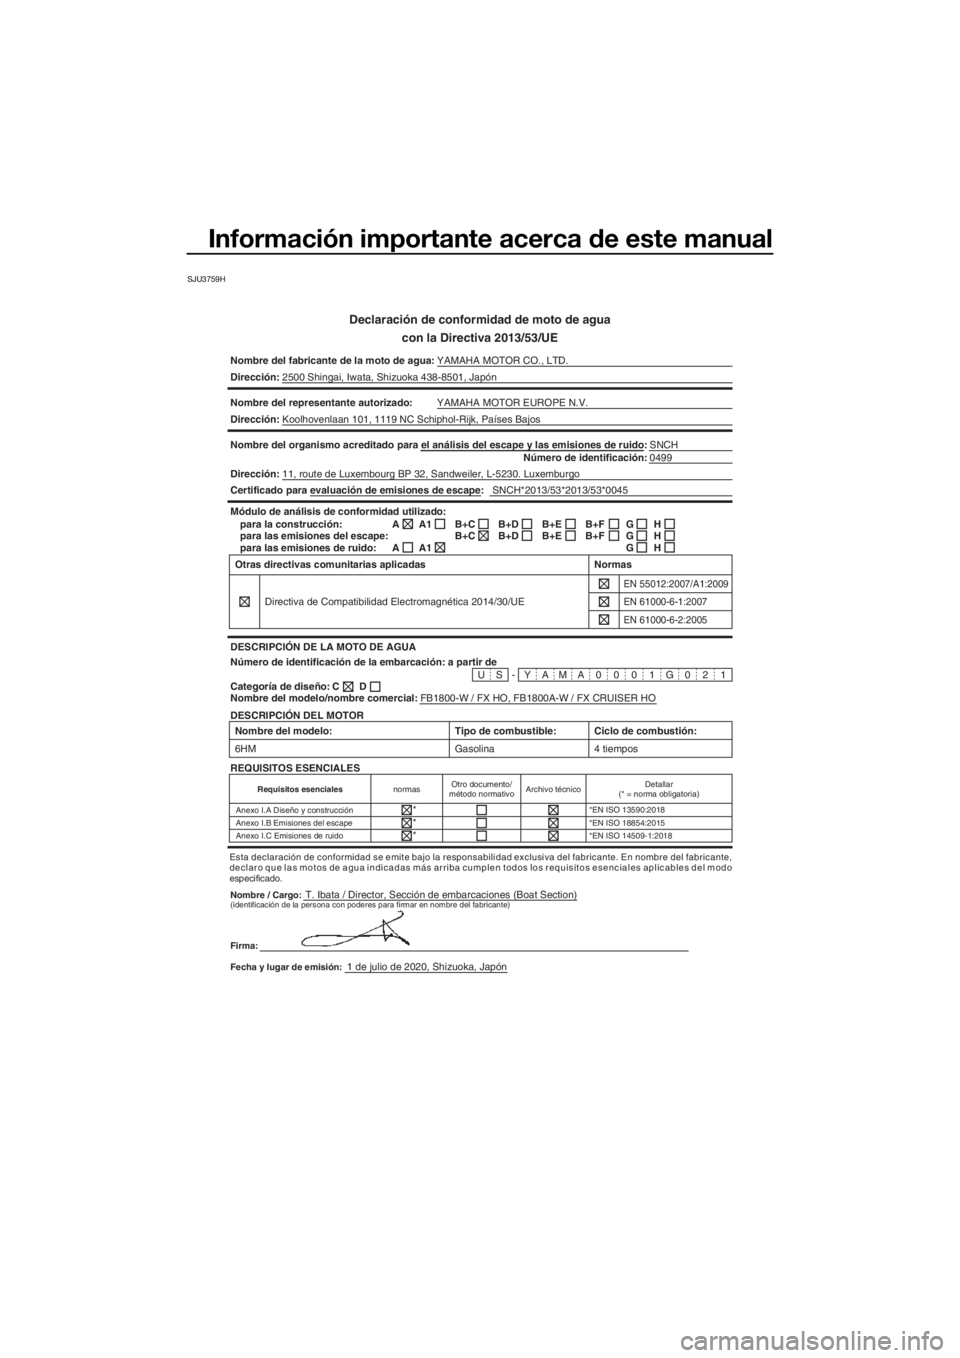 YAMAHA FX HO CRUISER 2021  Manuale de Empleo (in Spanish) Información importante acerca de este manual
SJU3759H
Declaración de conformidad de moto de agua
con la Directiva 2013/53/UE
Nombre del fabricante de la moto de a gua:YAMAHA MOTOR CO., LTD.
Direcci�